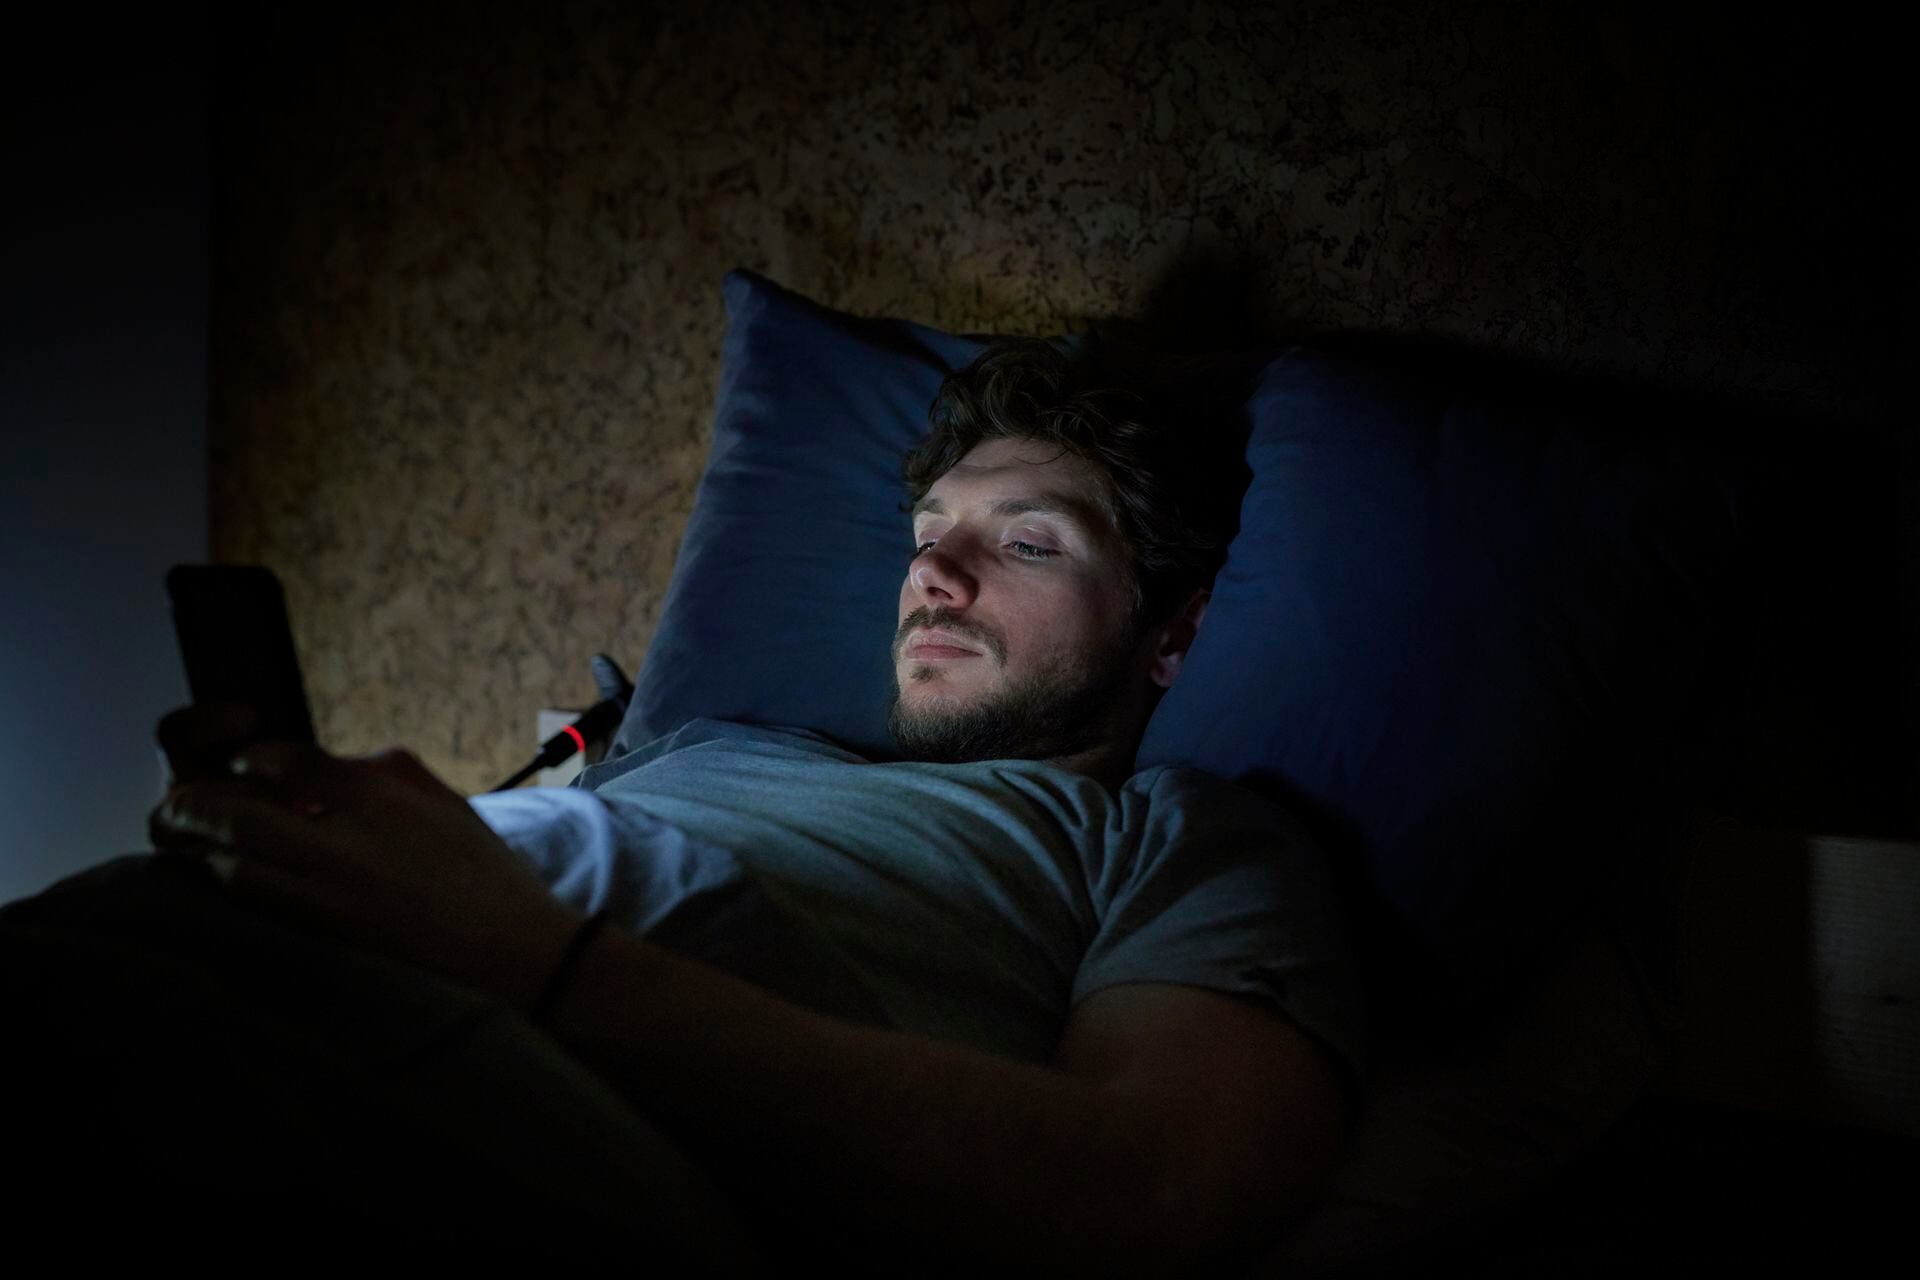 El efecto que produce mirar el móvil en la cama y que no te deja dormir